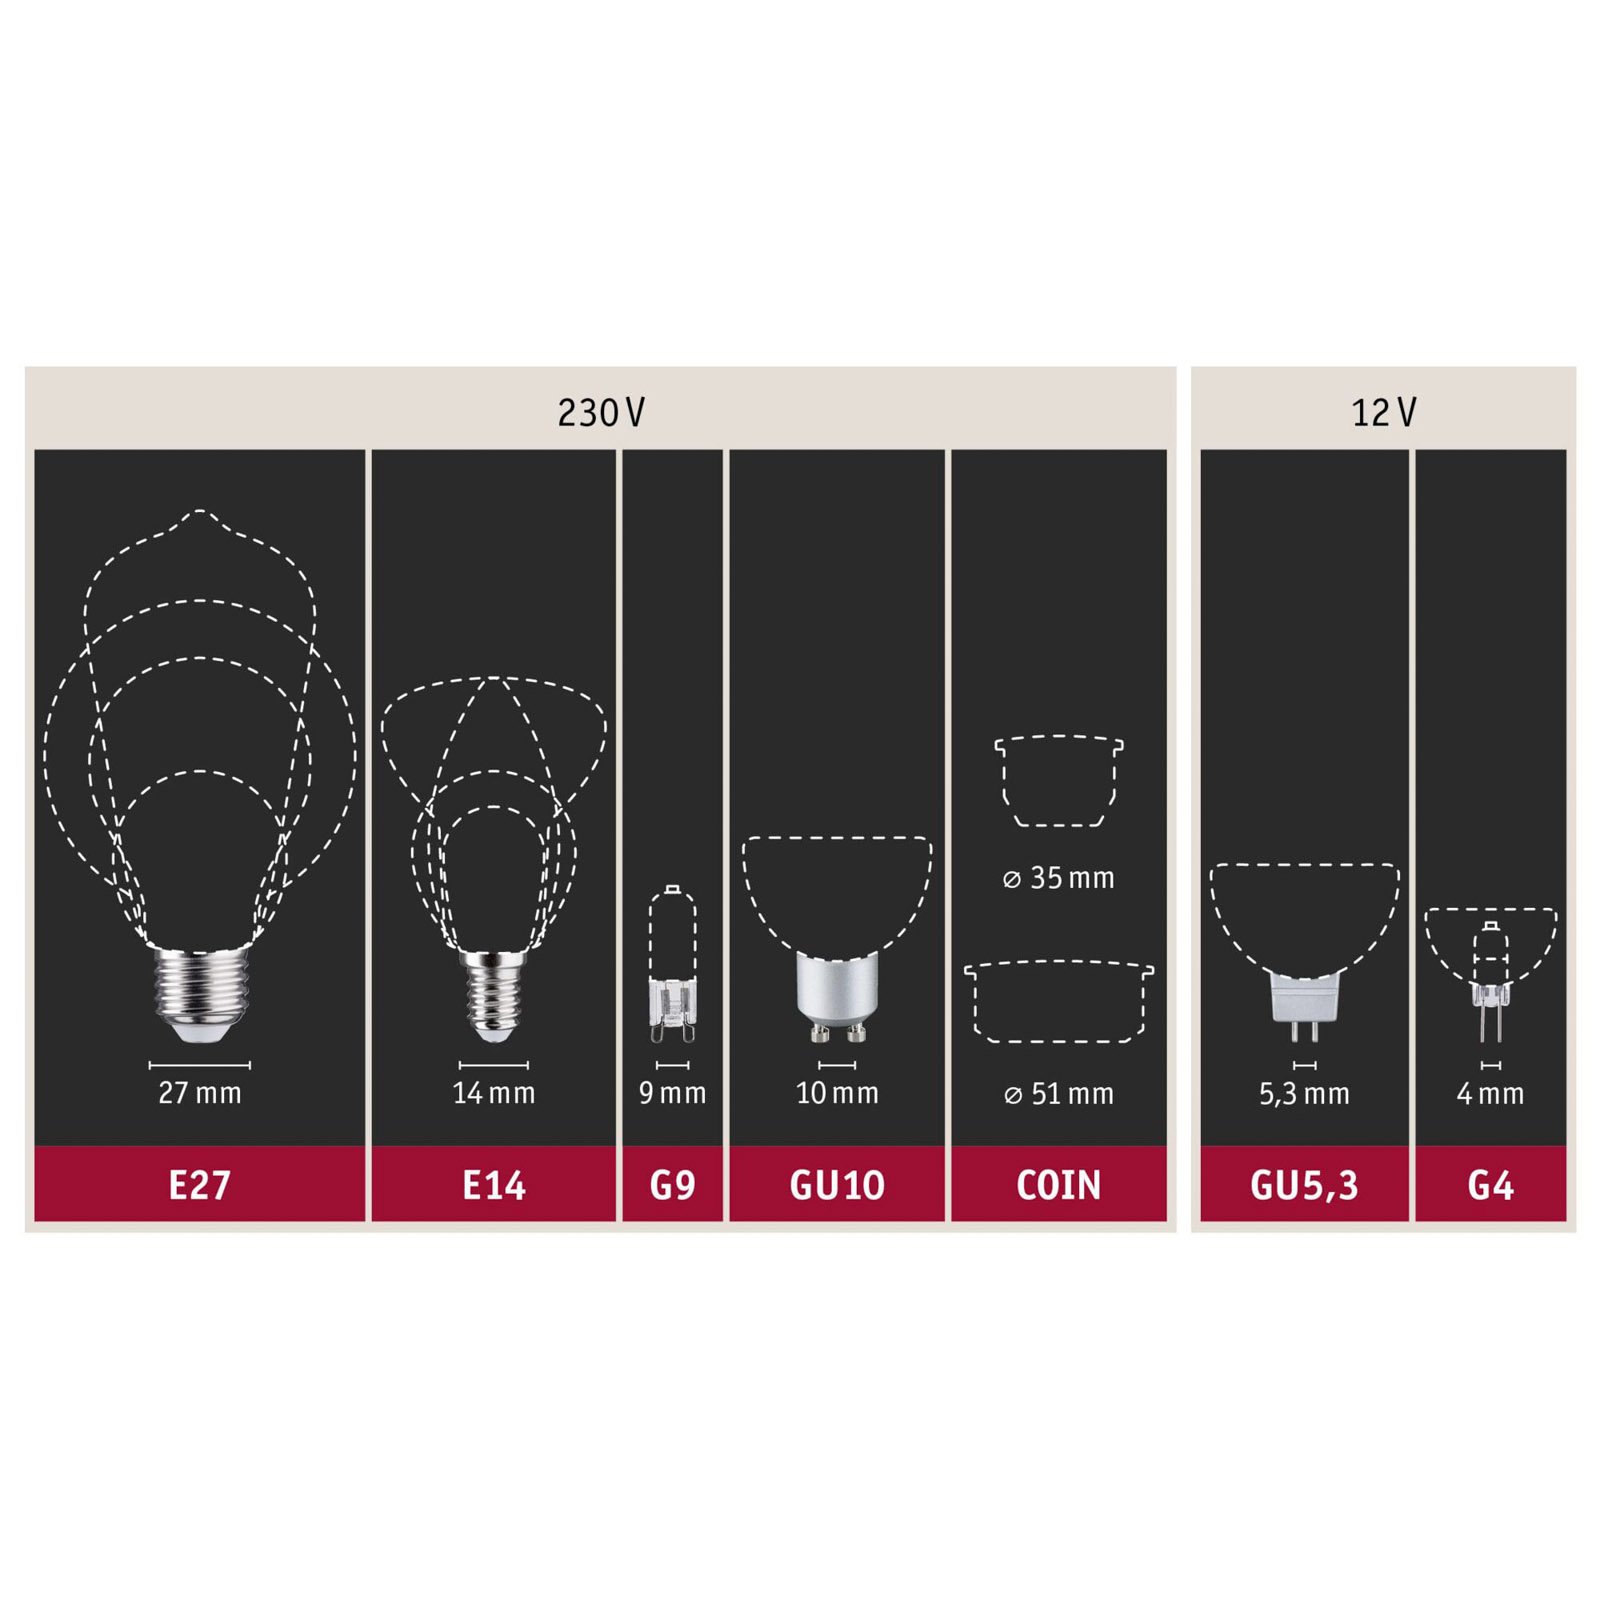 LED lampa svijeća E14 2.6W 2.700K nalet vjetra